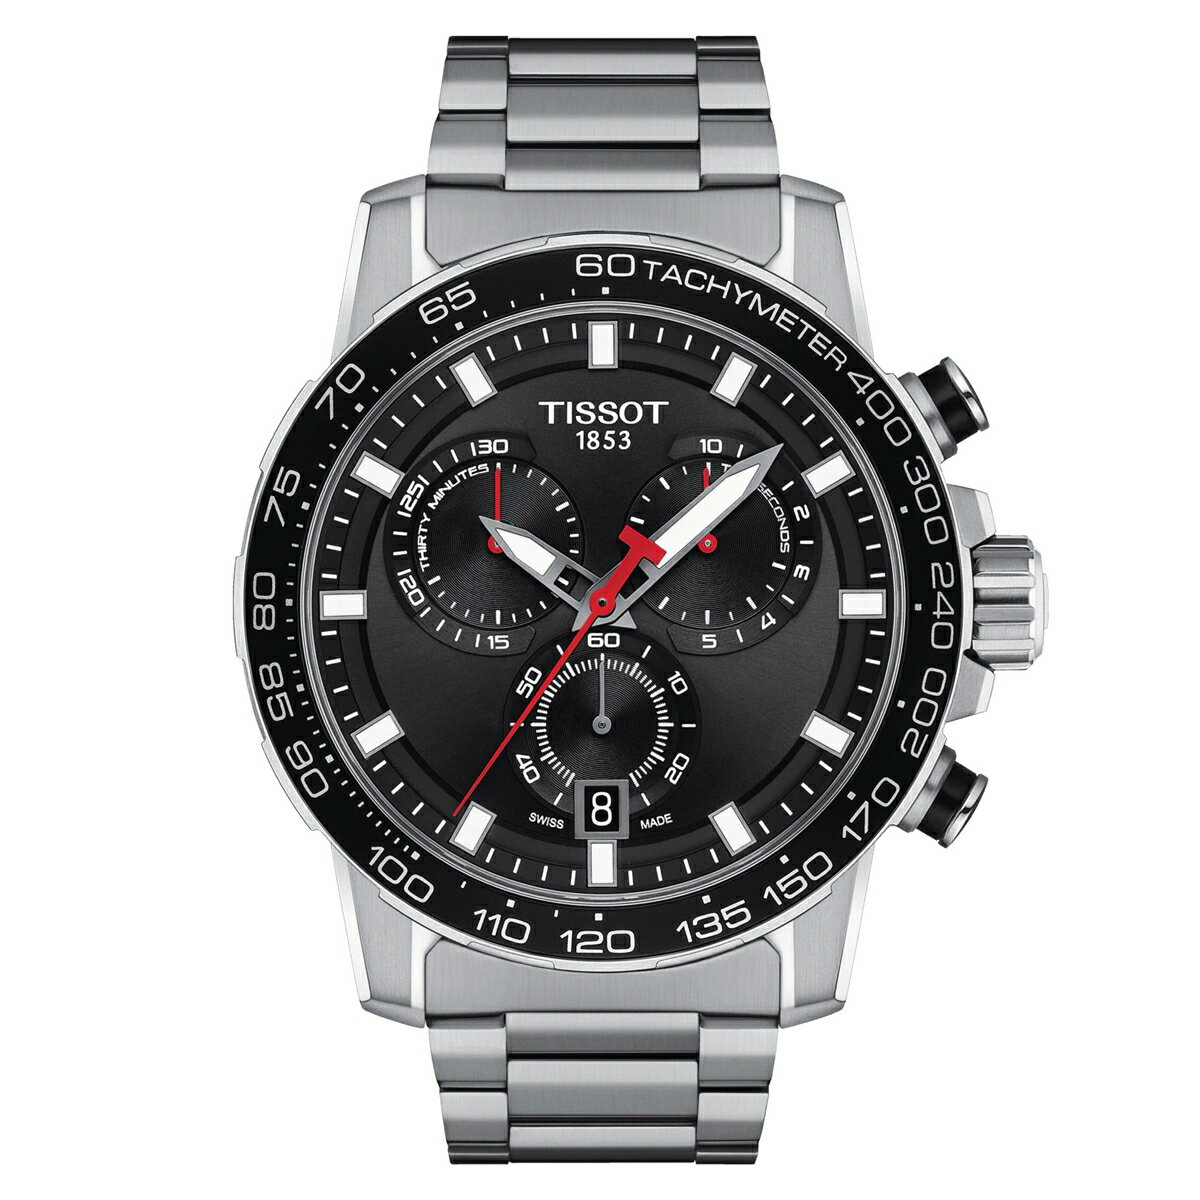 ティソ ティソ TISSOT T125.617.11.051.00 T-スポーツ スーパースポーツ クロノ 国内正規品 腕時計